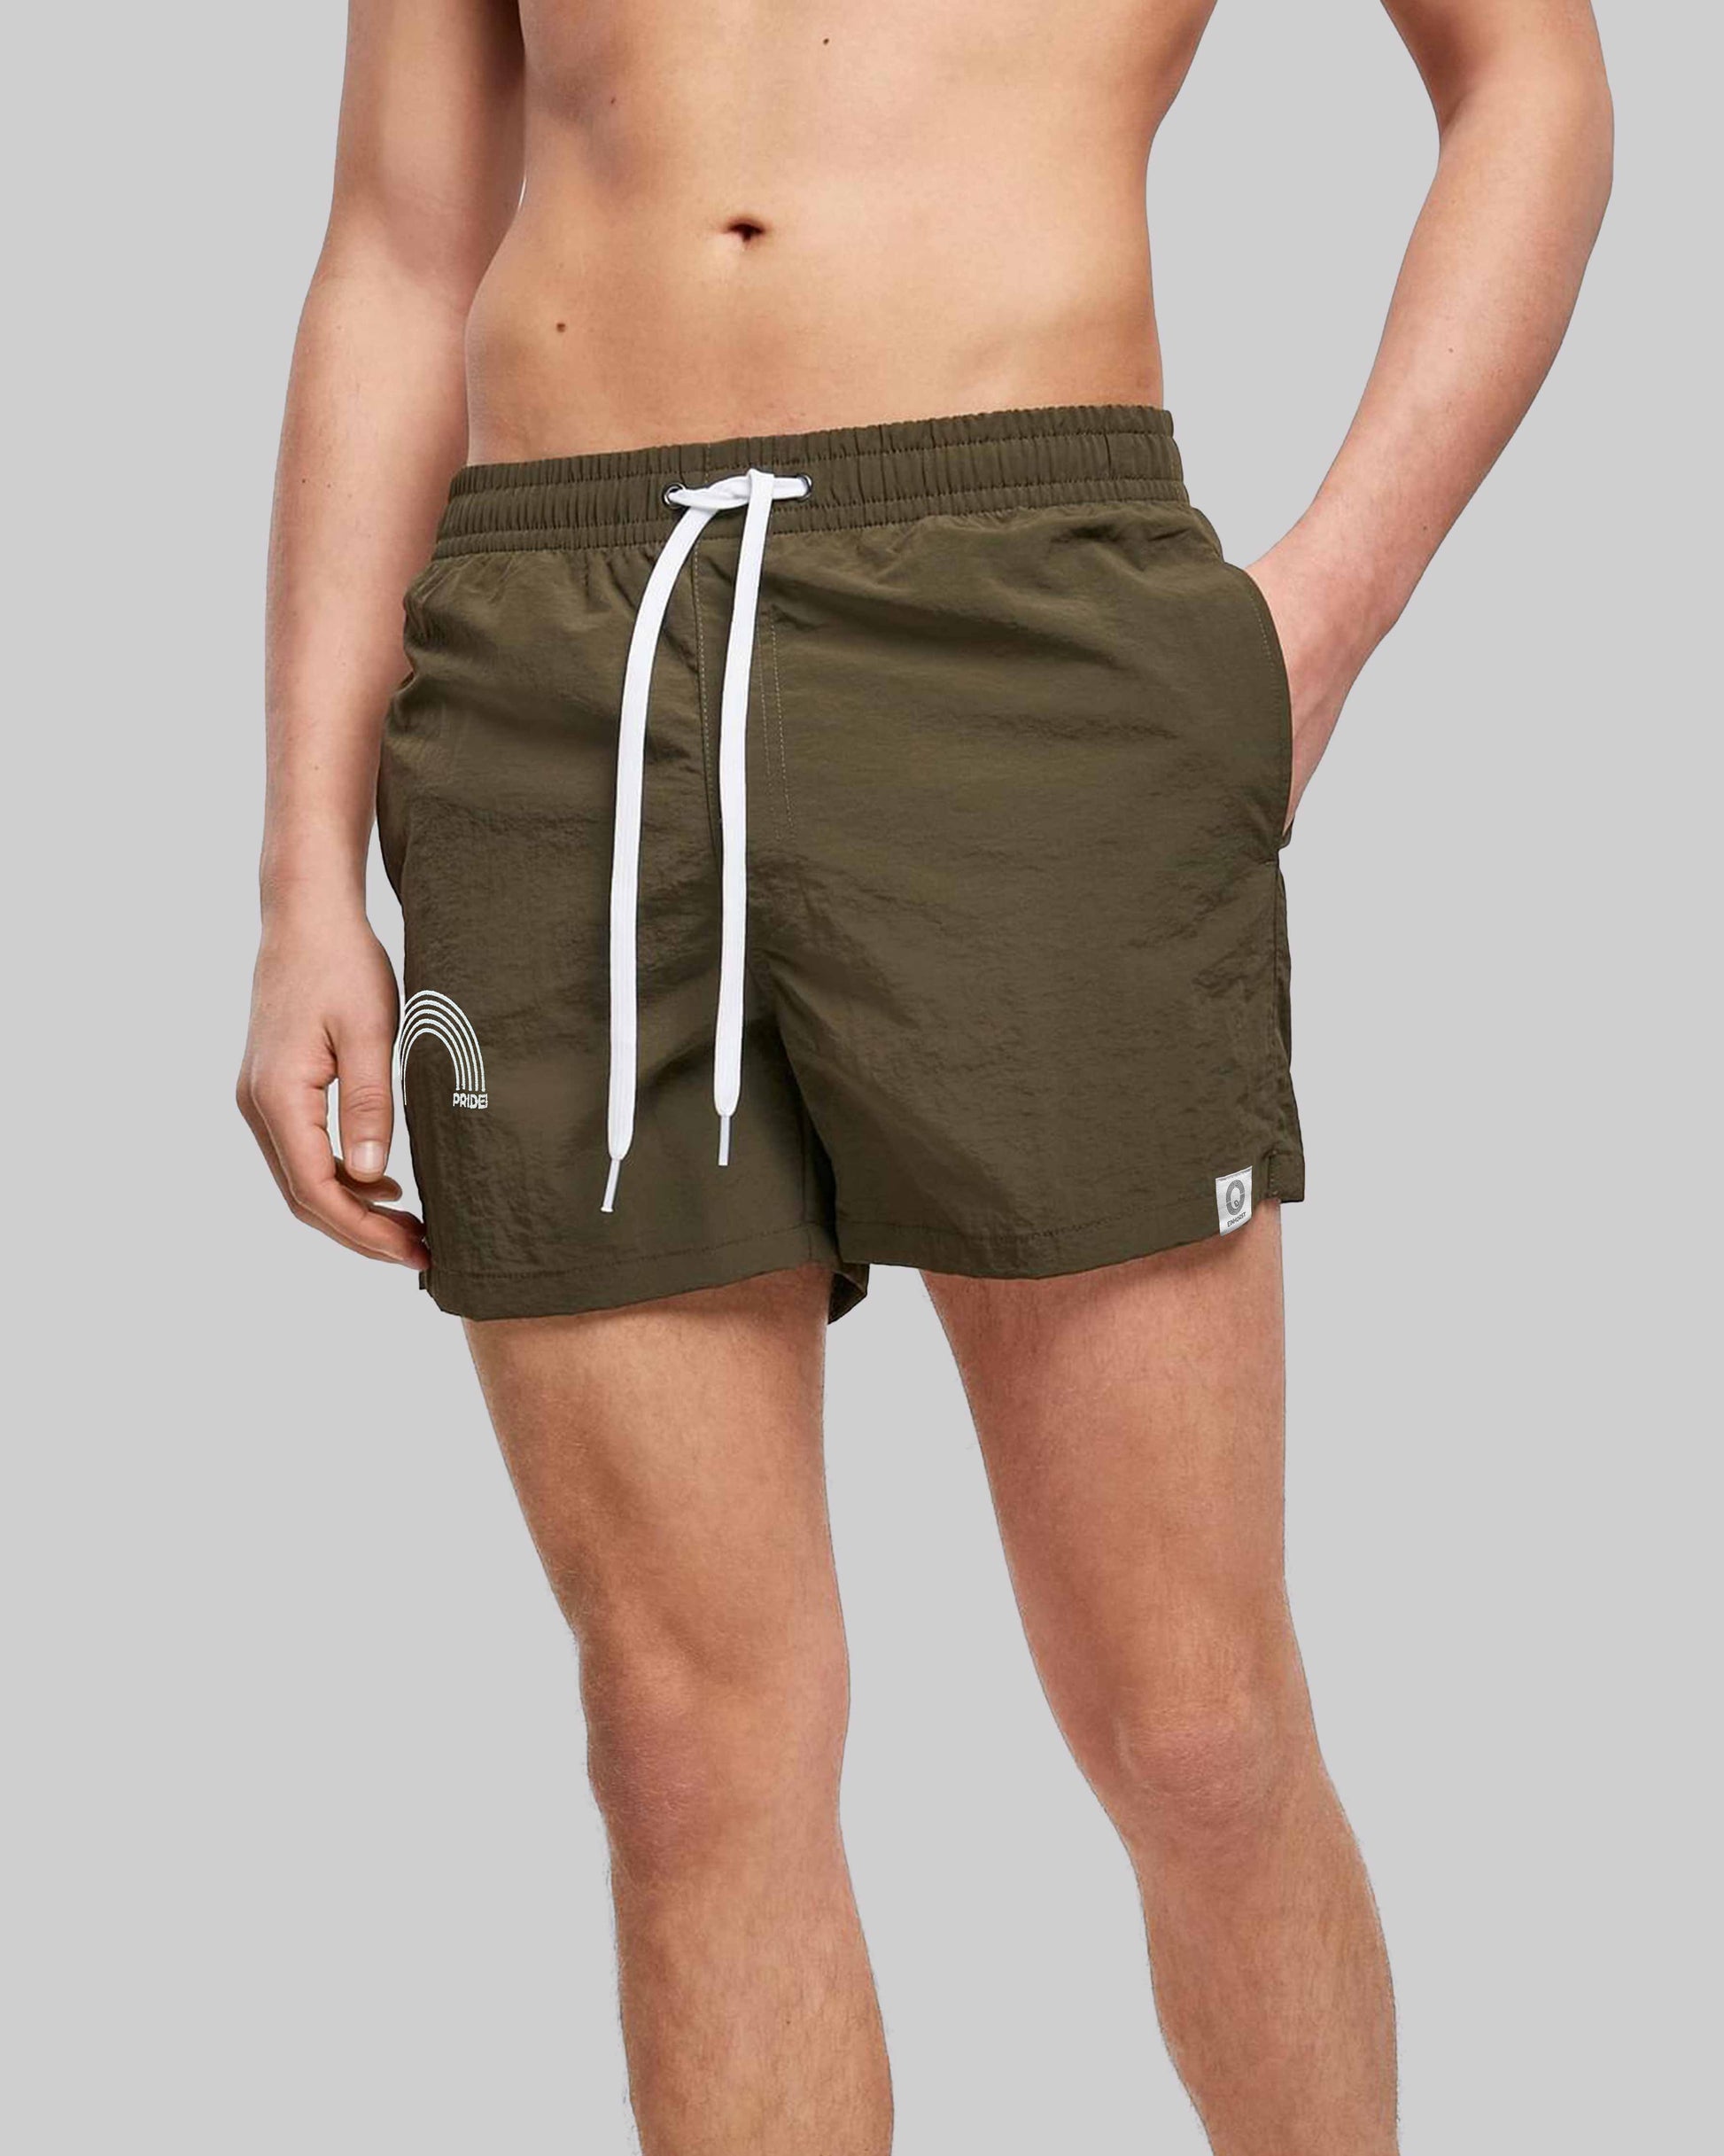 EINHORST® Schwimm- & Sportshorts mit dem Motiv "pride-Regenbogen" in der Farbe "Olive", Bild von einer männlichen Person von vorne, die die Shorts trägt